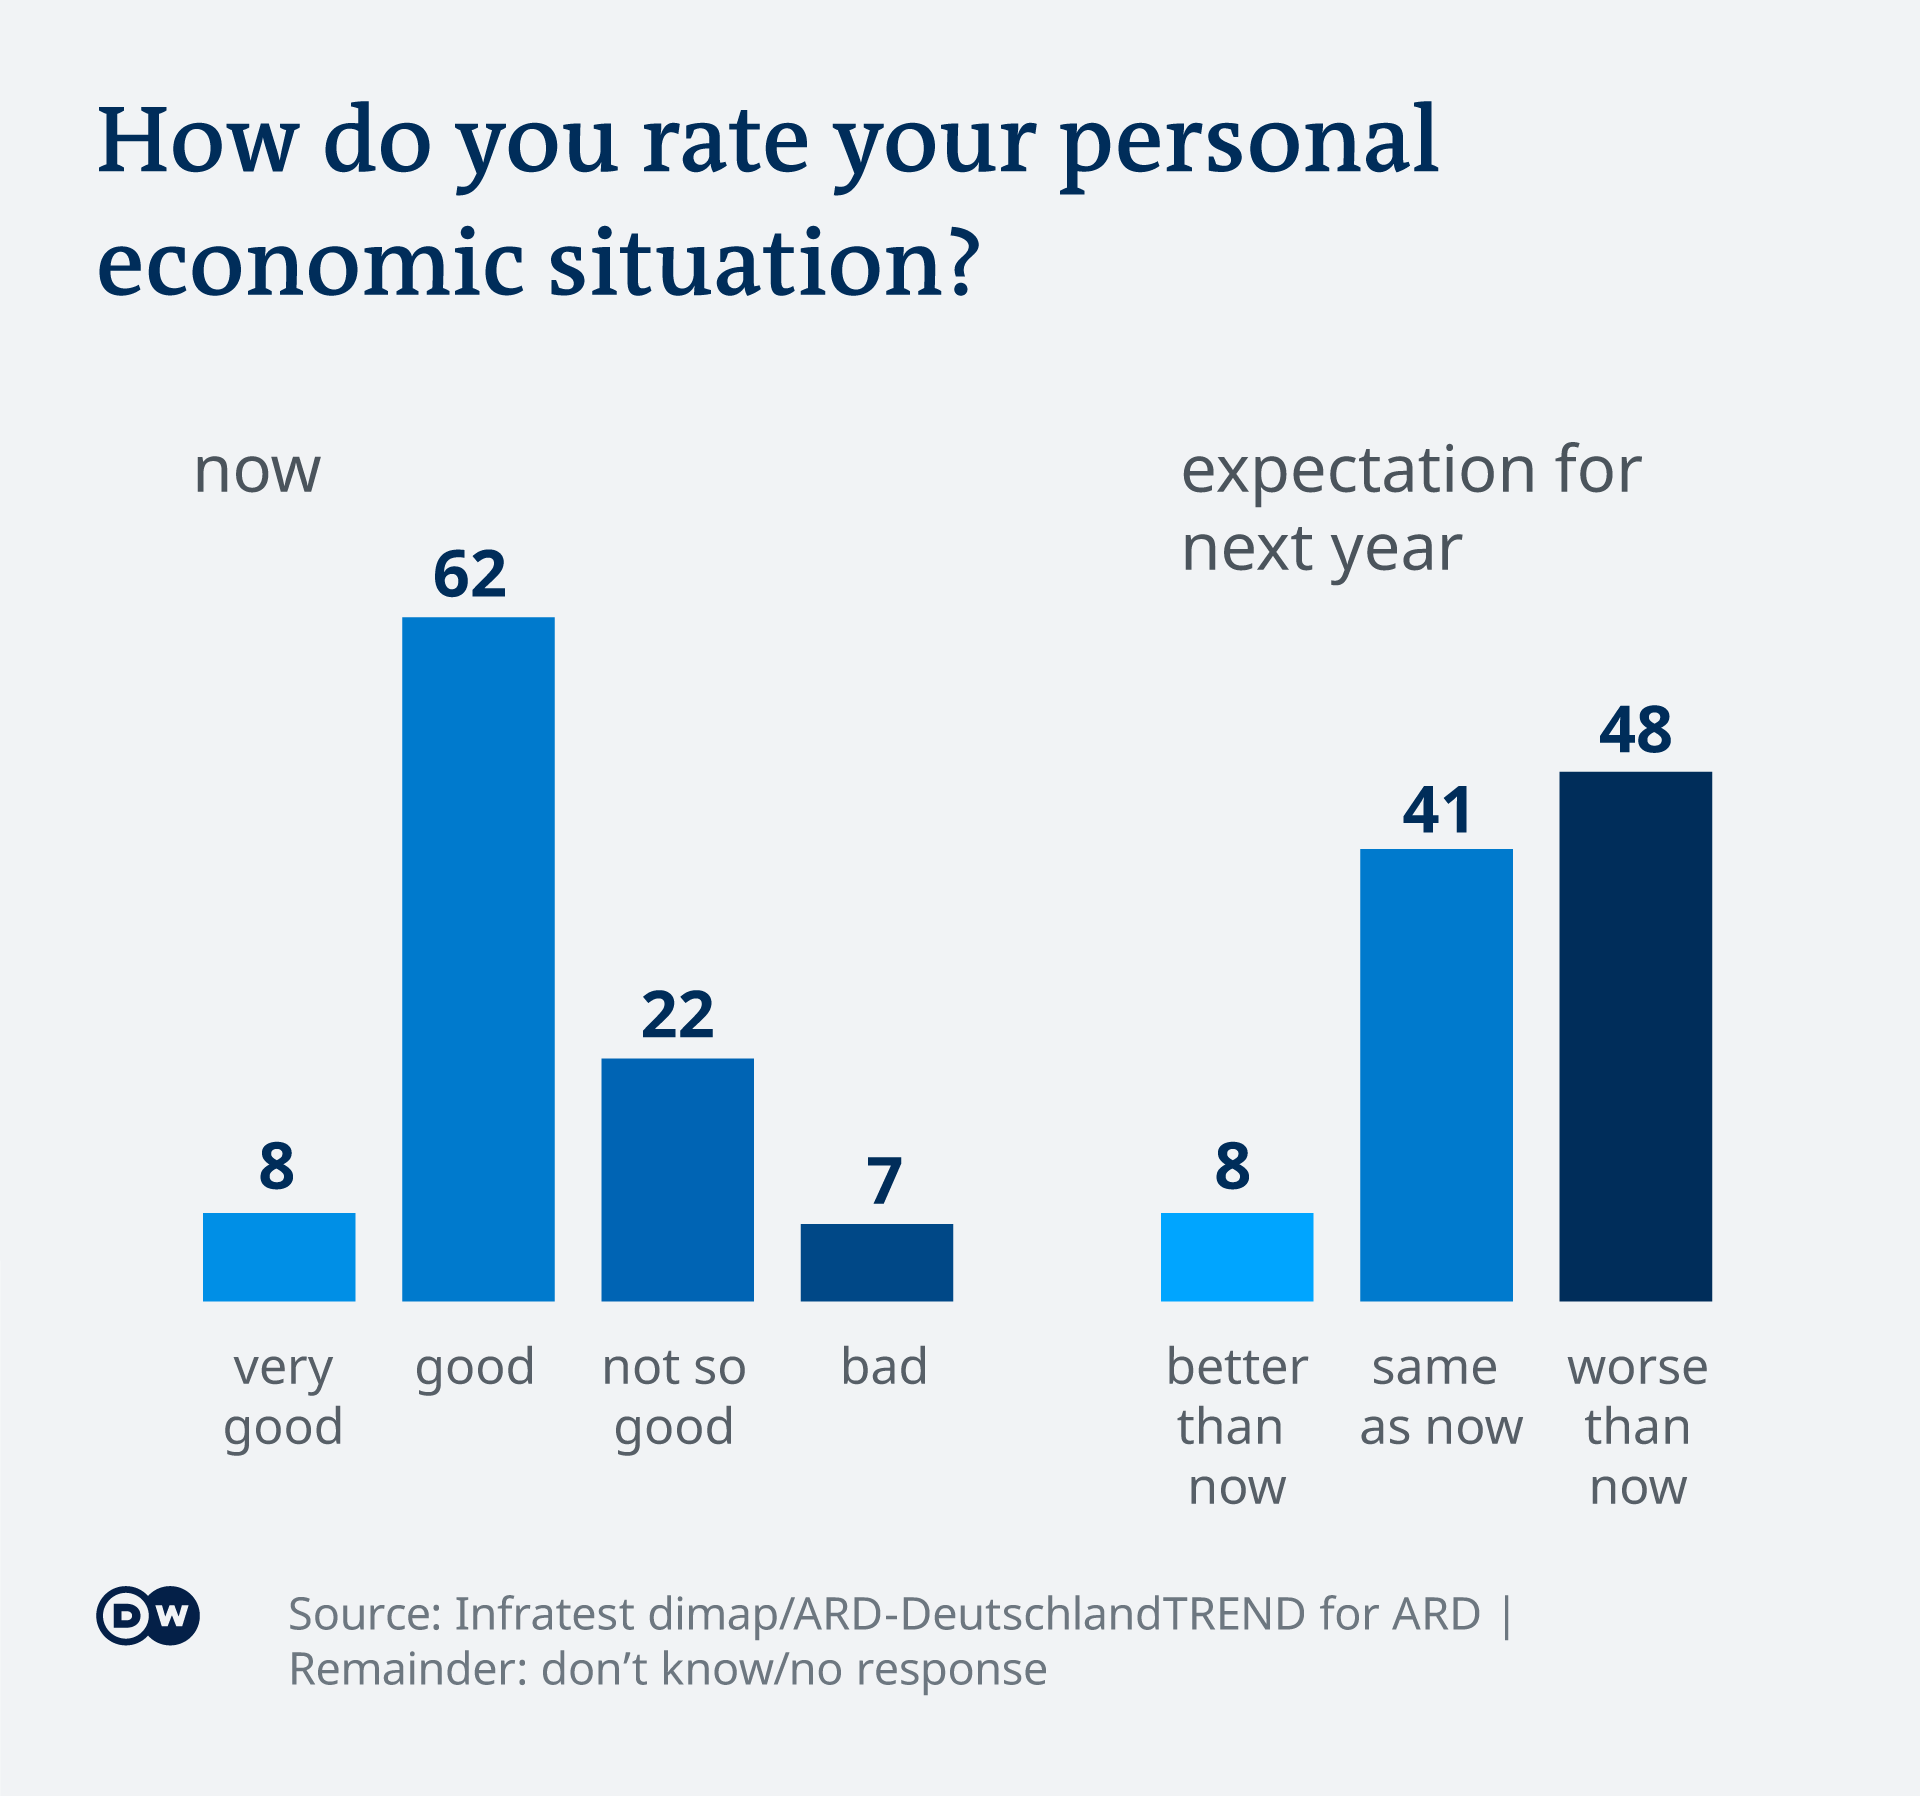 Gráfico que muestra que los encuestados esperan que su situación personal se deteriore